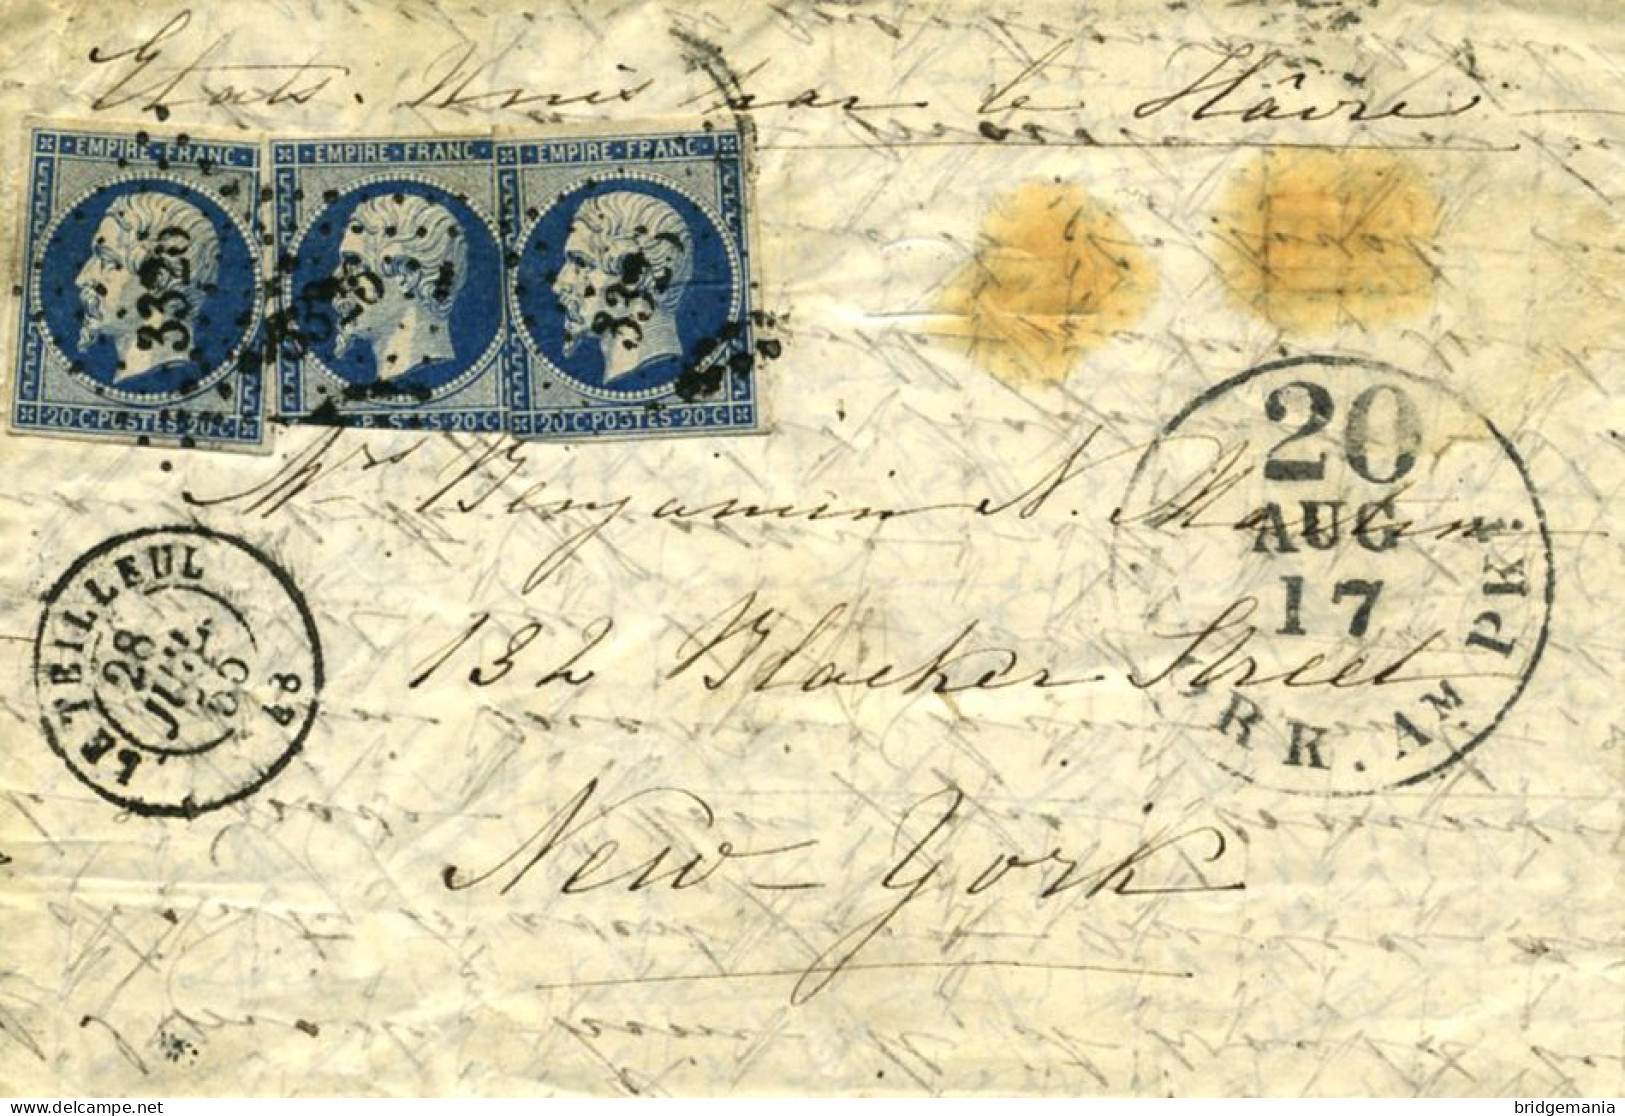 MTM130 - 1855 TRANSATLANTIC LETTER FRANCE TO USA STEAMER UNION THE HAVRE LINE - Storia Postale